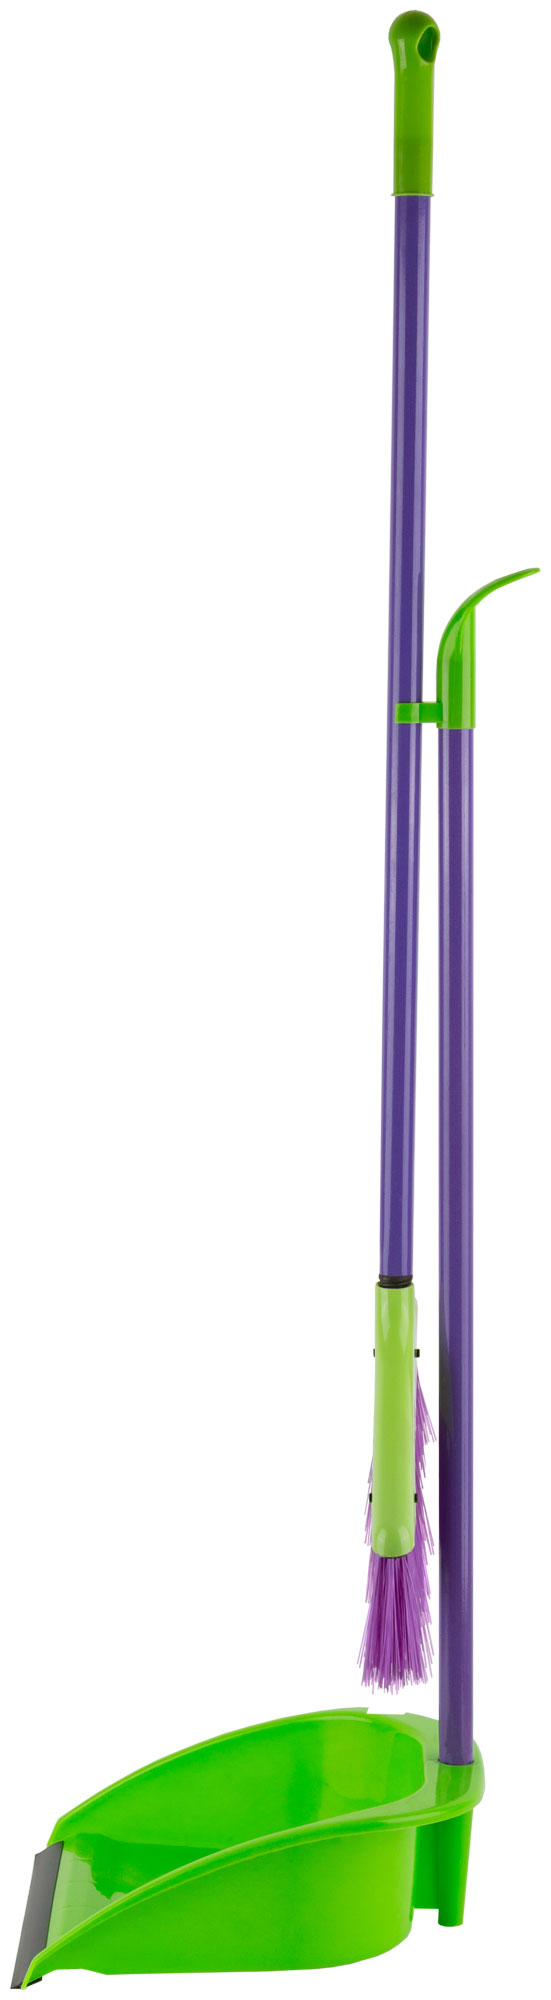 Набор для уборки "Грейс" (совок + щетка пластиковые на длинных ручках)  240х250х810 мм